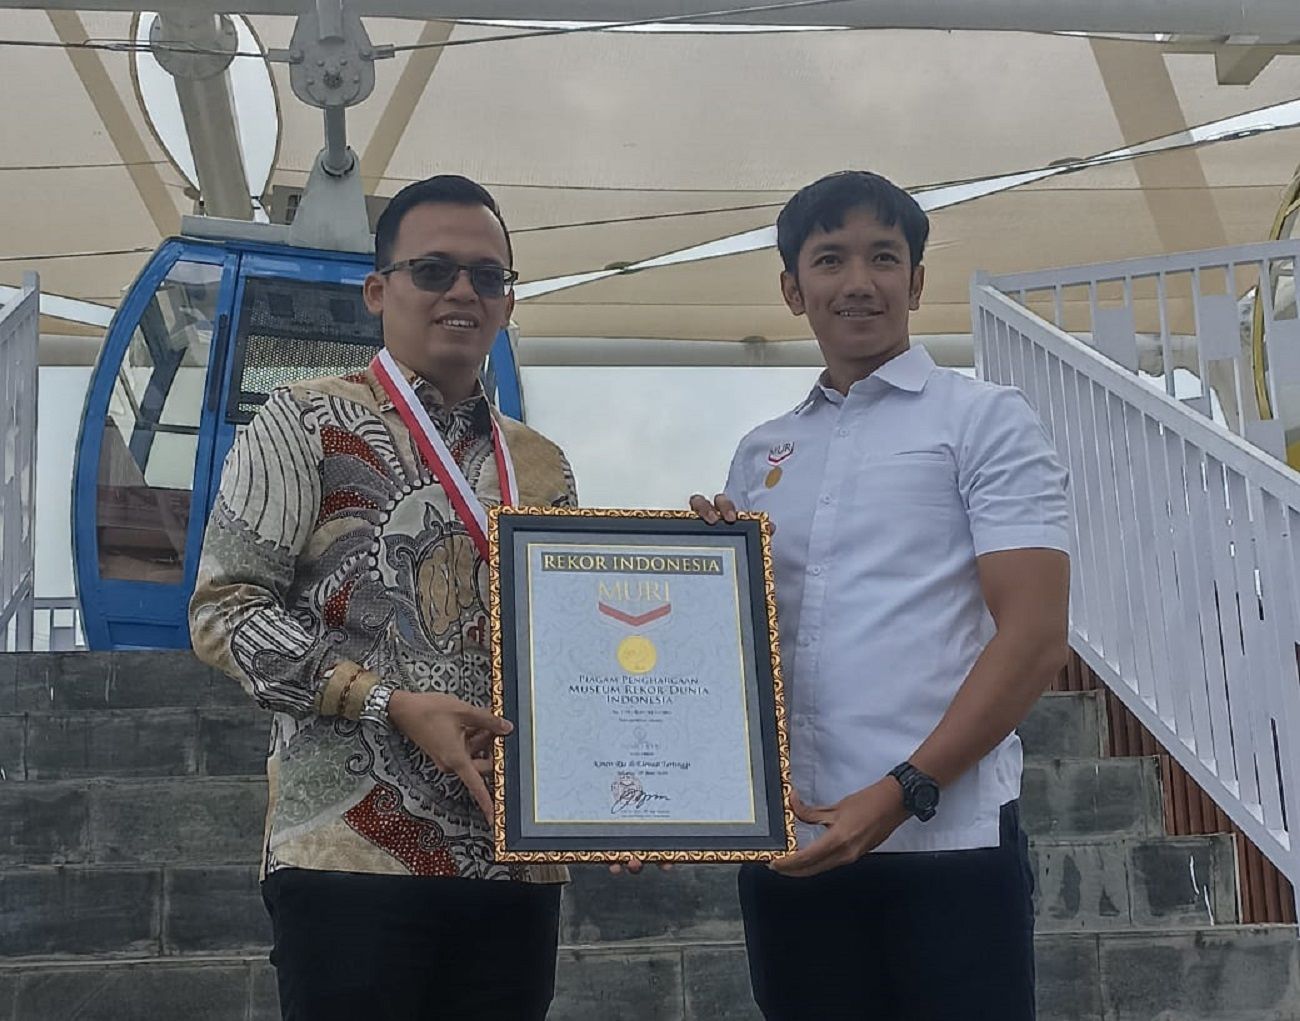 Anugerah rekopr Muri untuk Nimo Eye sebagai wahana yang berlokasi di elevasi tertinggi di Indonesia